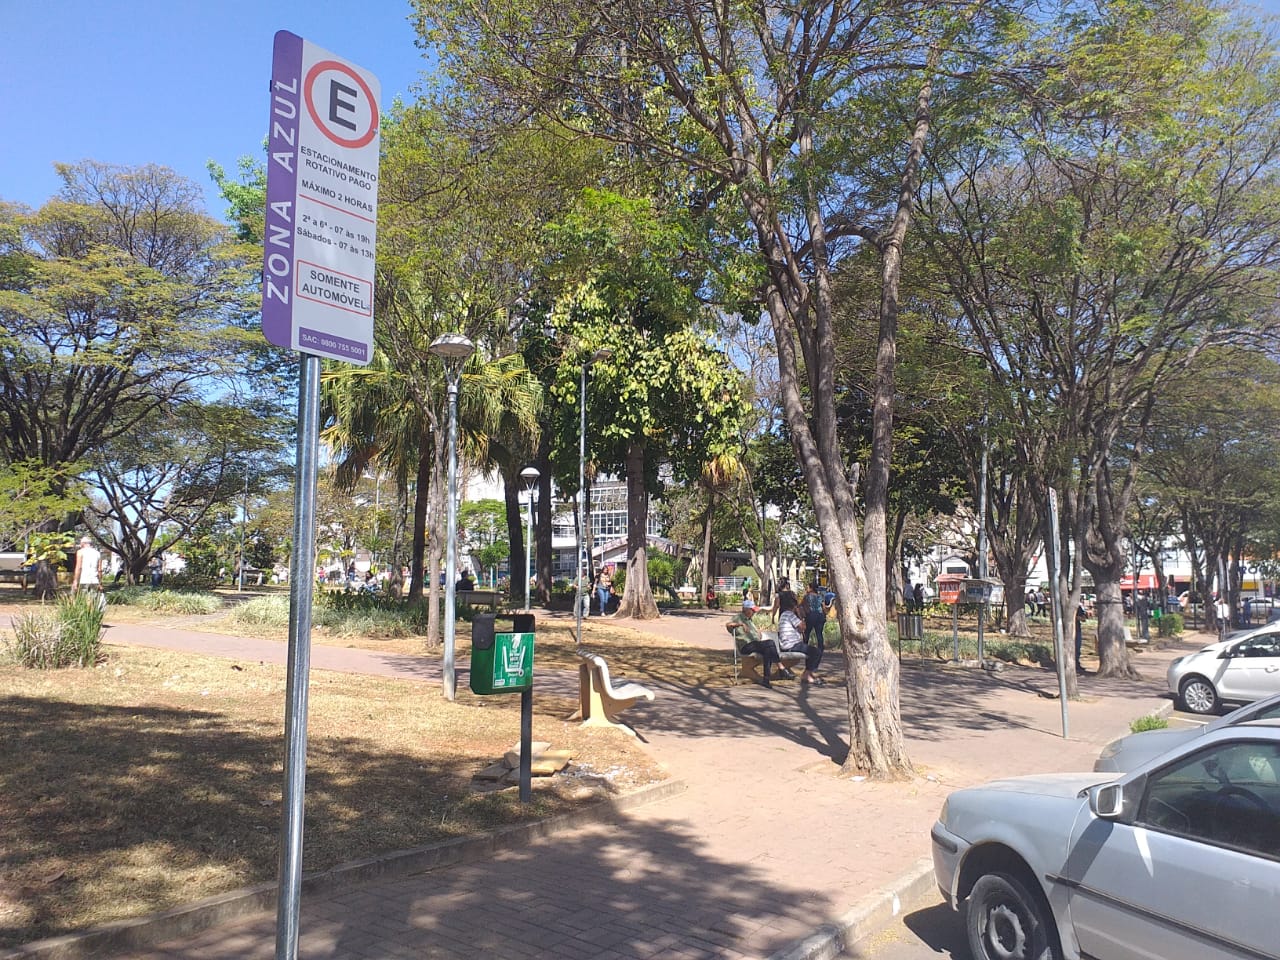 Taxa de estacionamento irregular no Rotativo está regulamentada em Itaúna desde fevereiro; fiscalização não foi anunciada pela Prefeitura